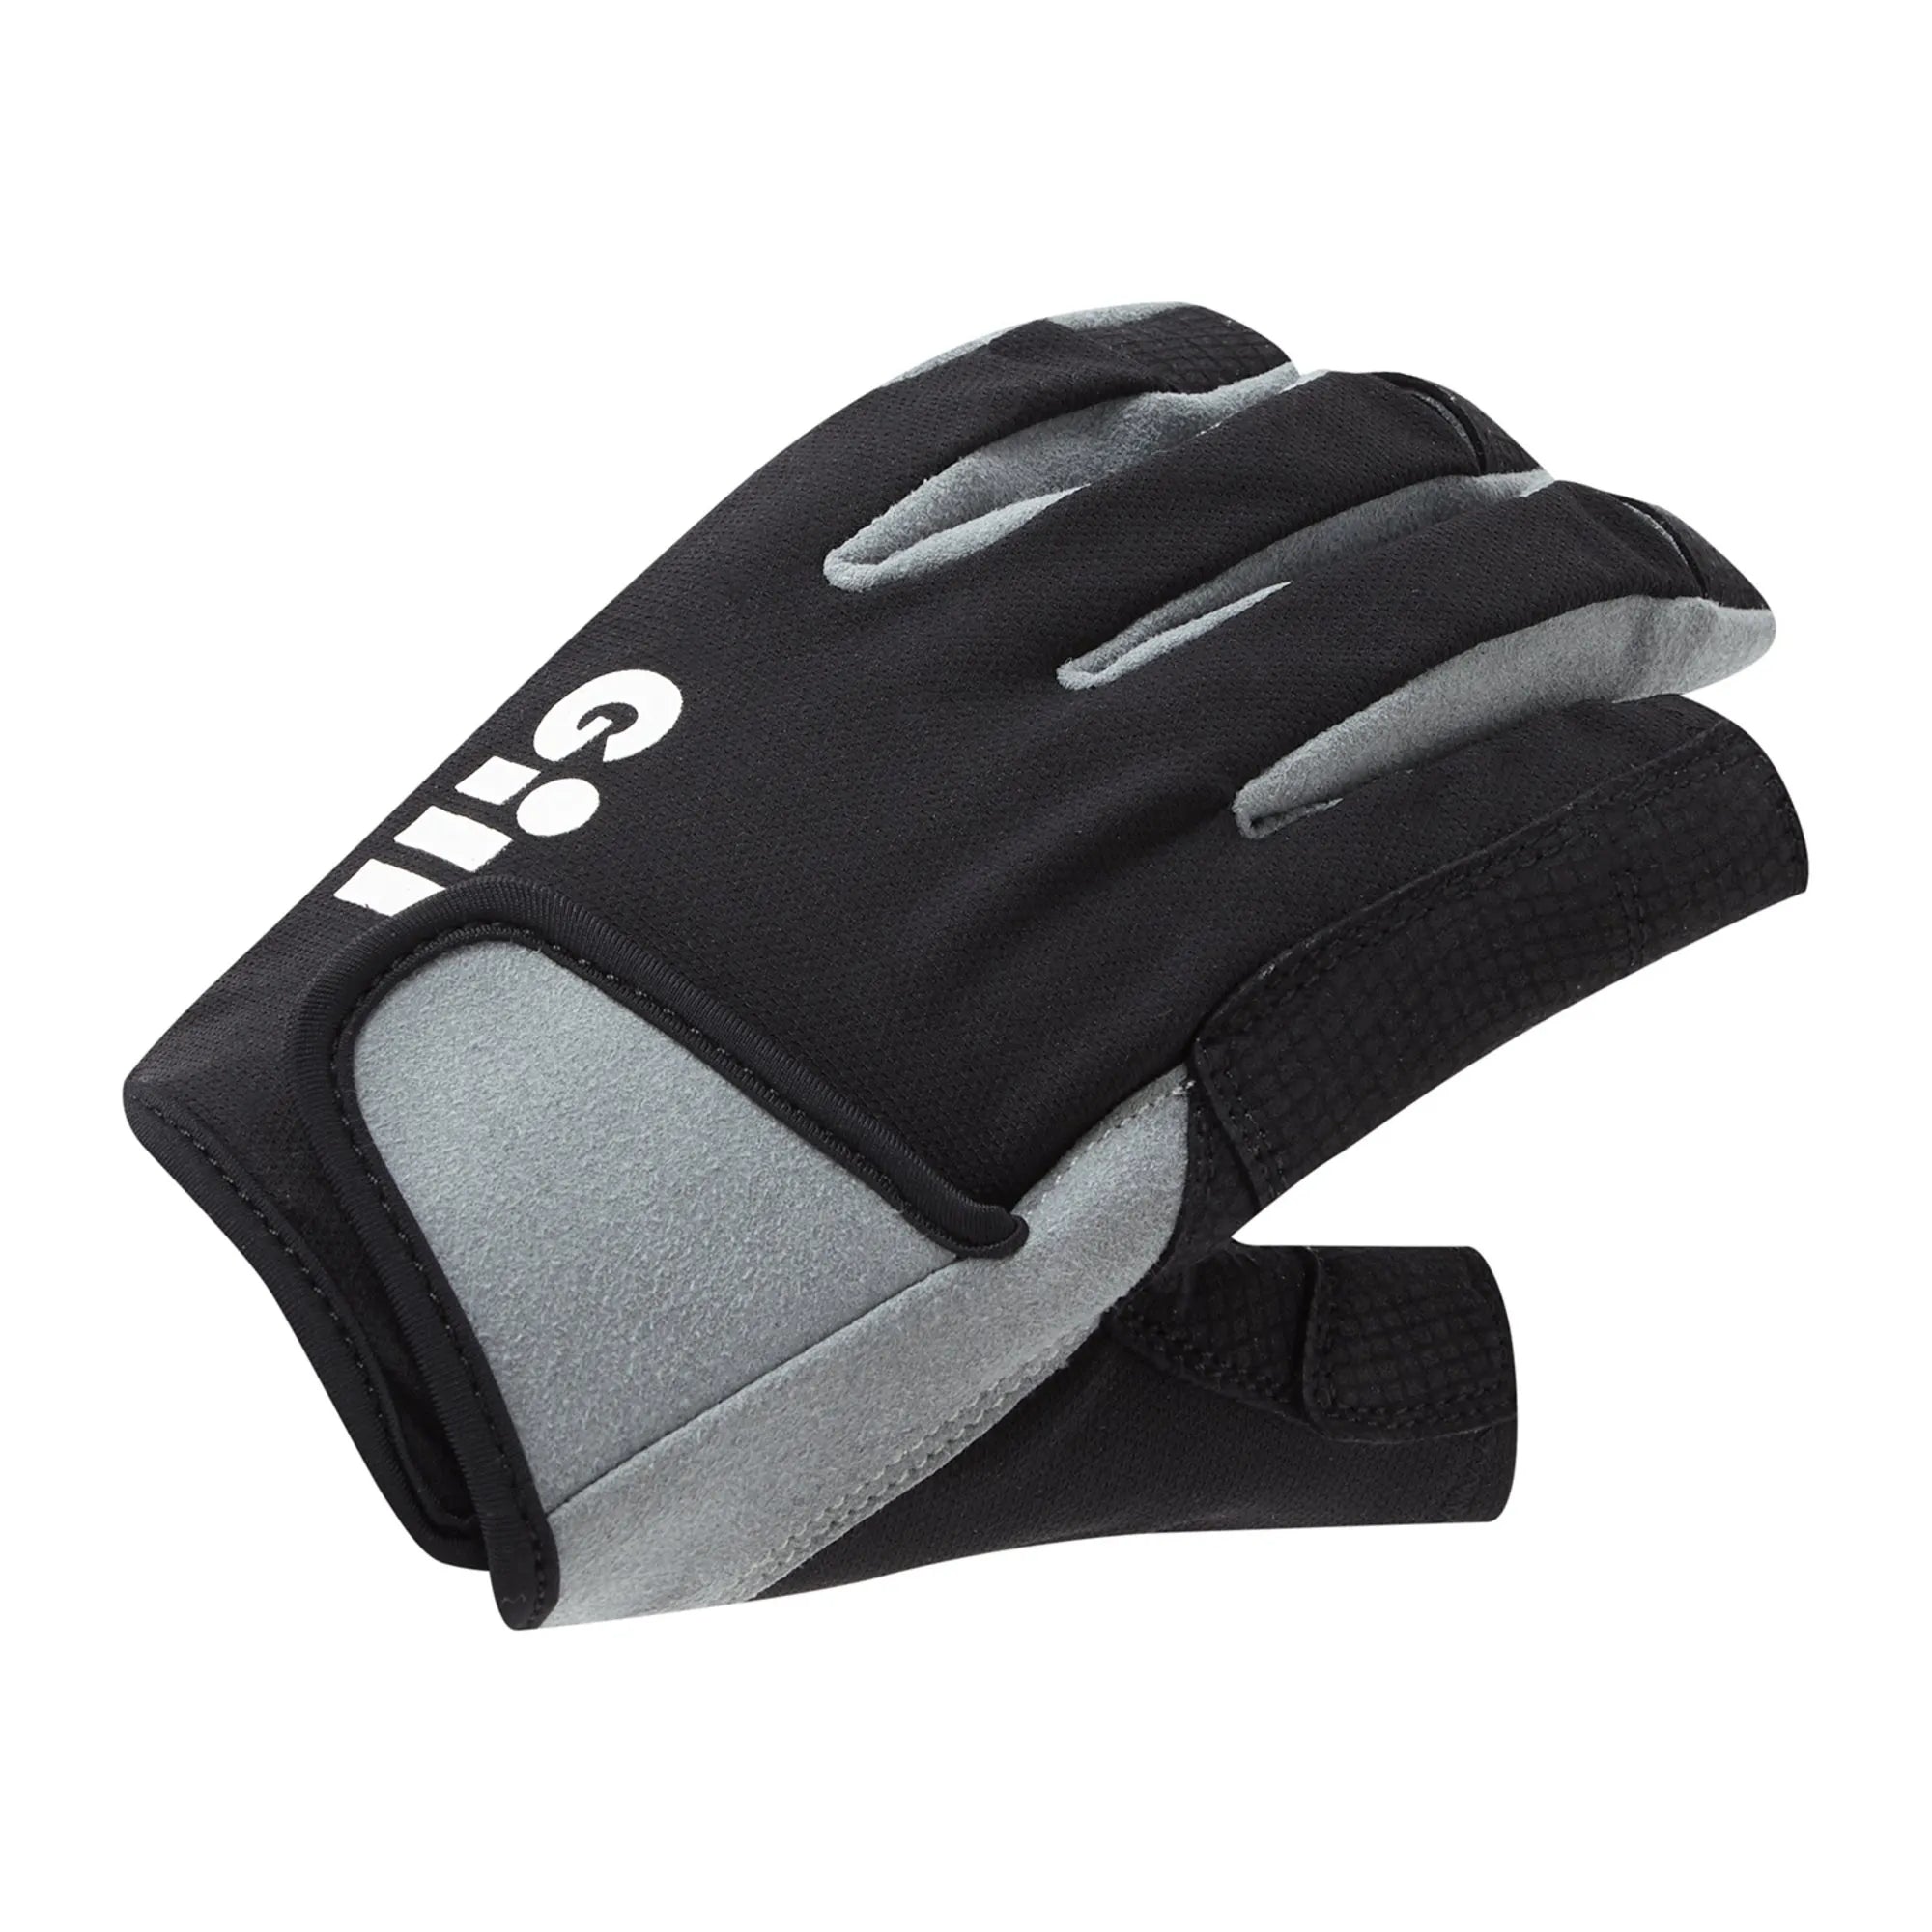 Deckhand Gloves (Long Finger) - Black